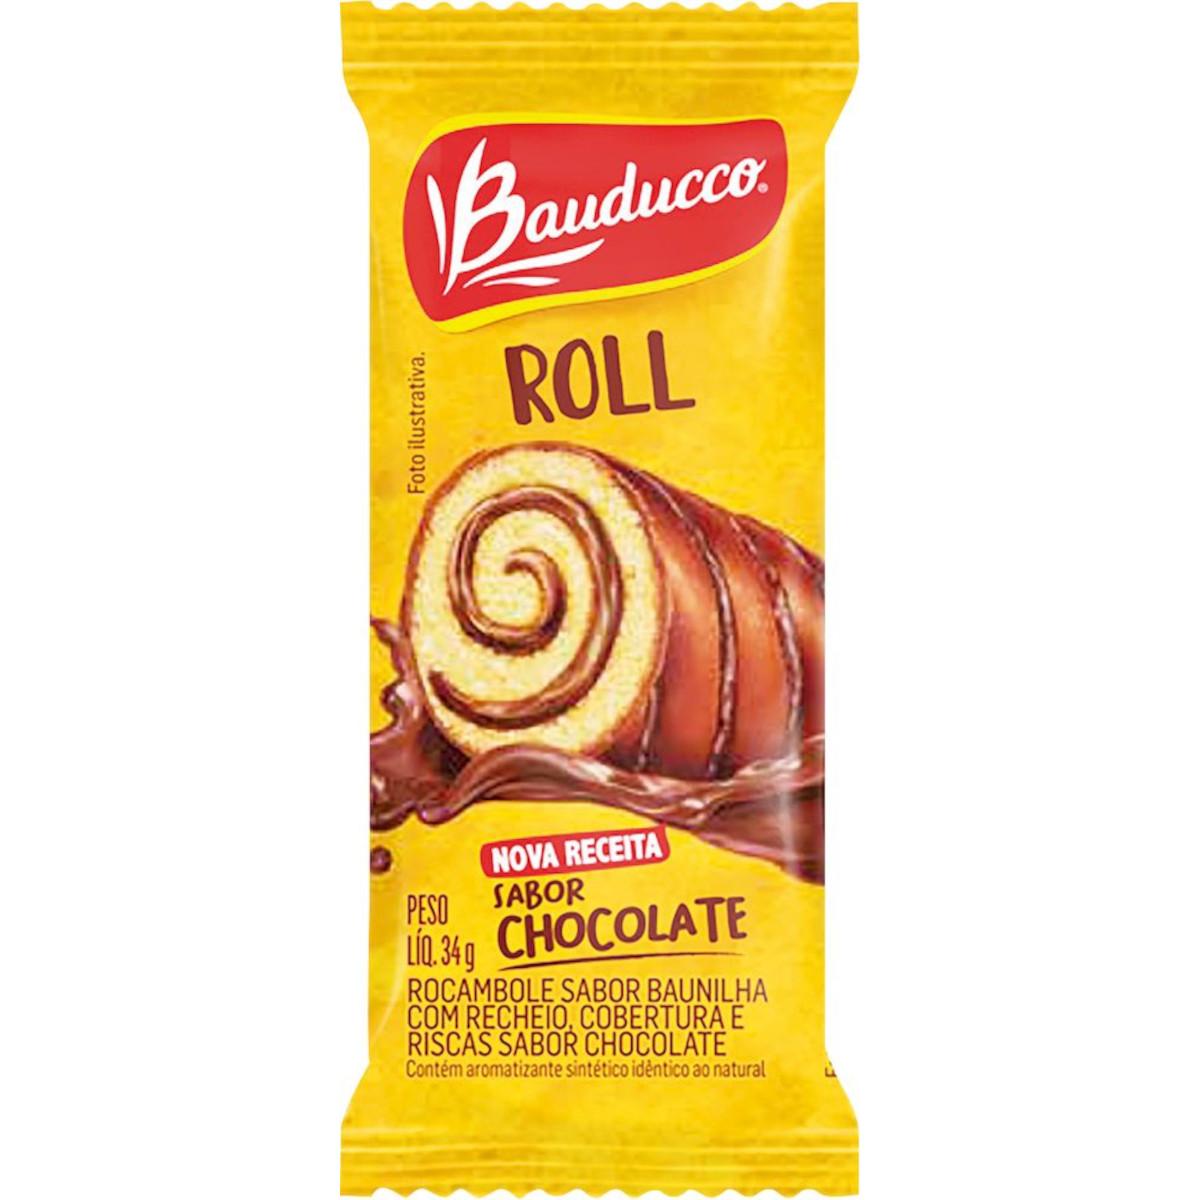 Bolinho Roll Cake Bauducco 34g Chocolate é aqui na Barcelos